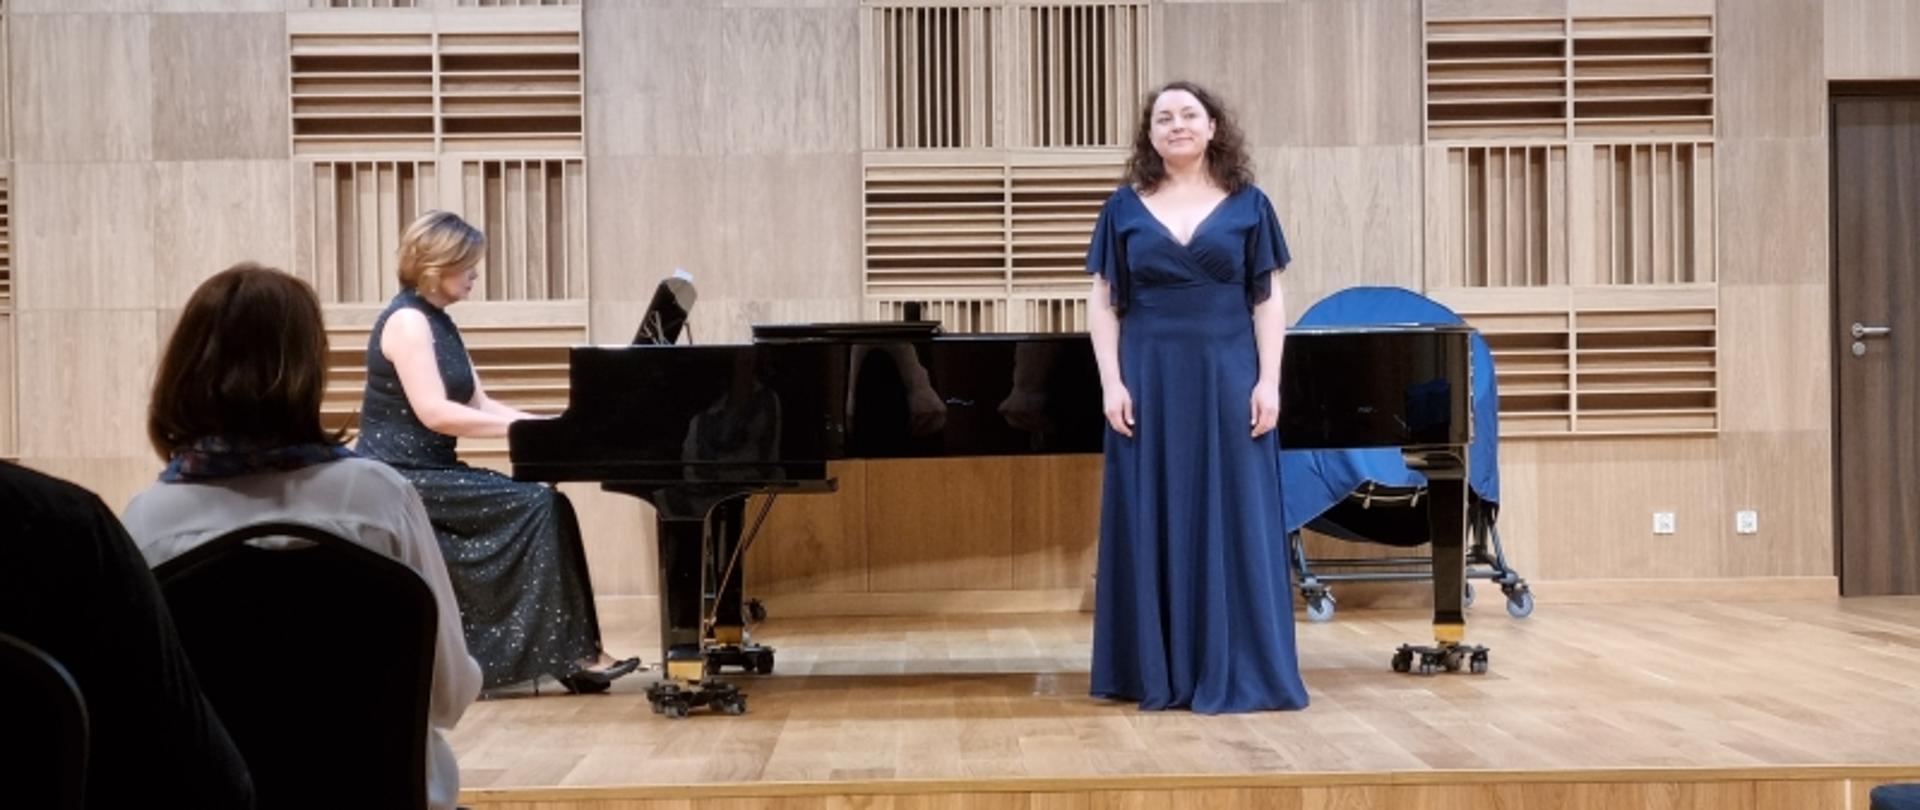 Wokalistka w granatowej sukni z towarzyszeniem pianistki przy fortepianie na estradzie.